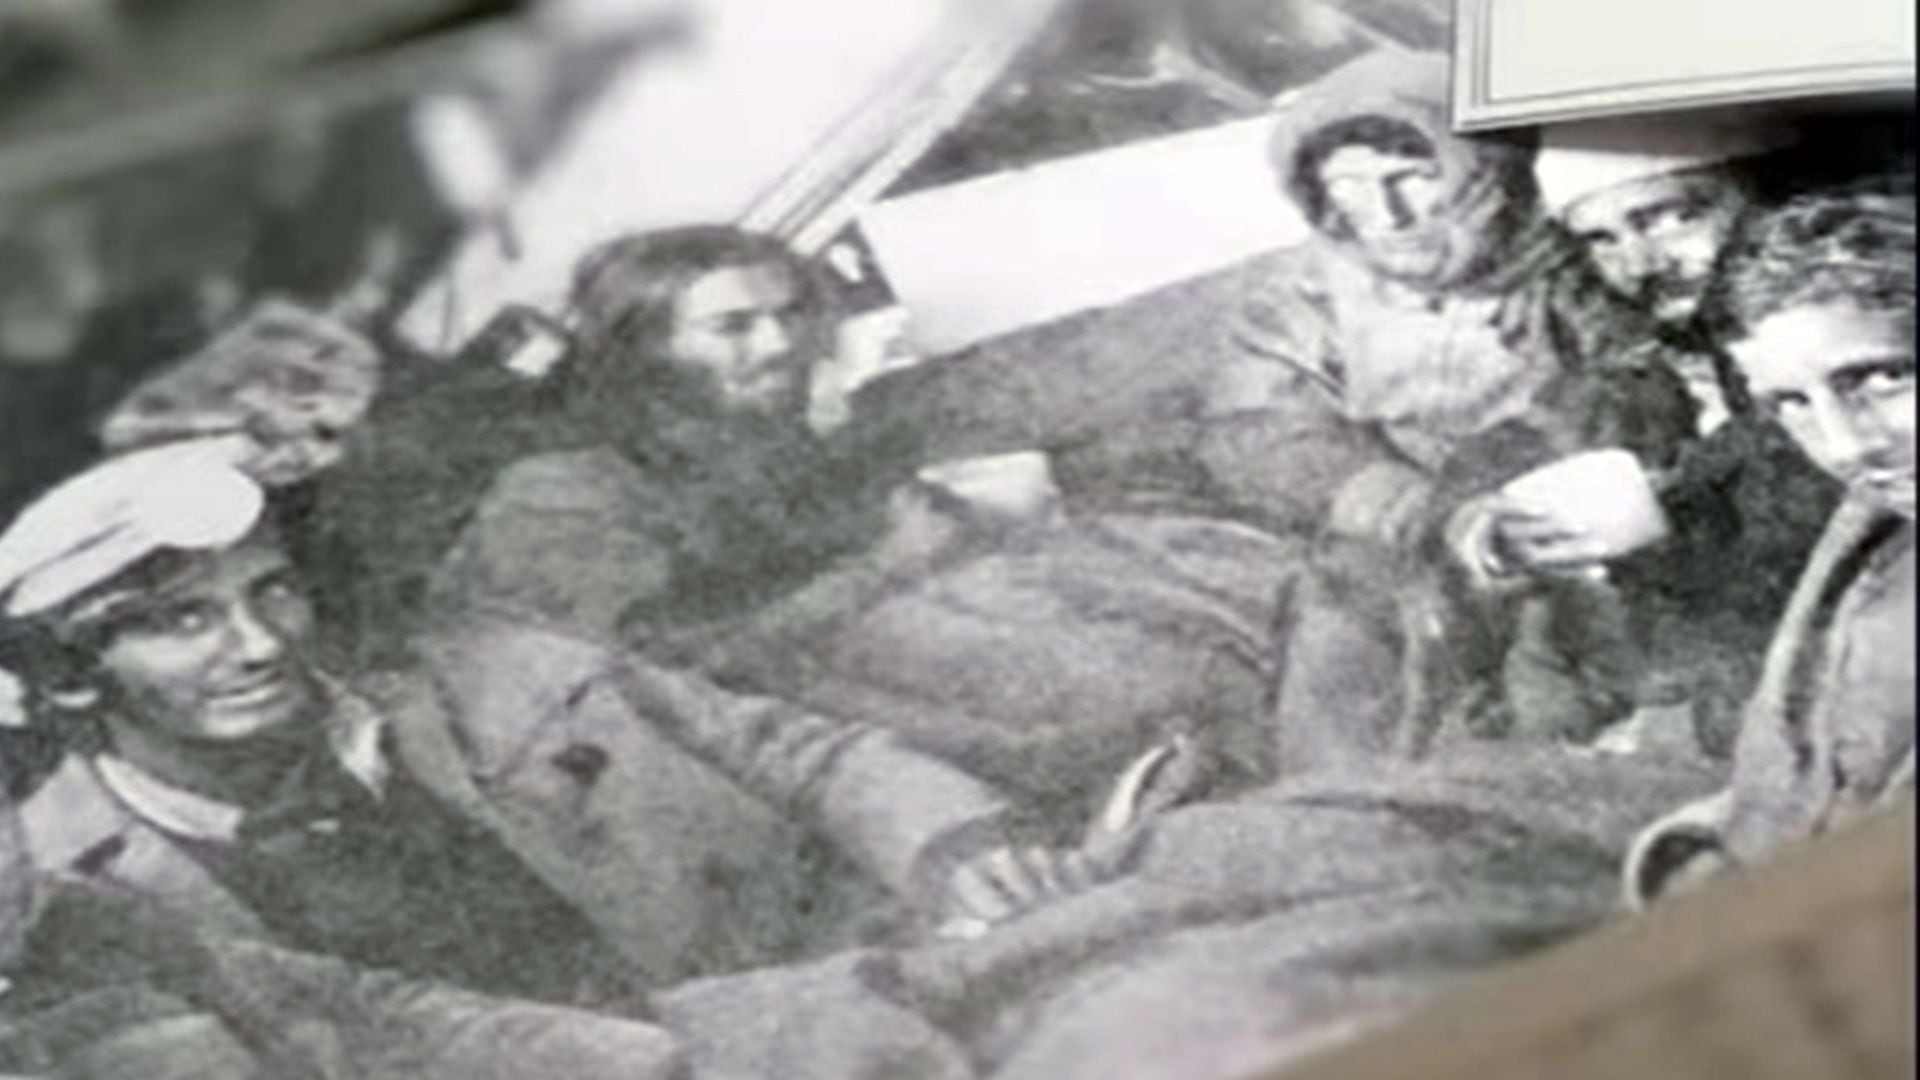 Las fotos que se sacaron los sobrevivientes de la tragedia Los Andes y fueron recreadas en el film, analizadas por dos de ellos